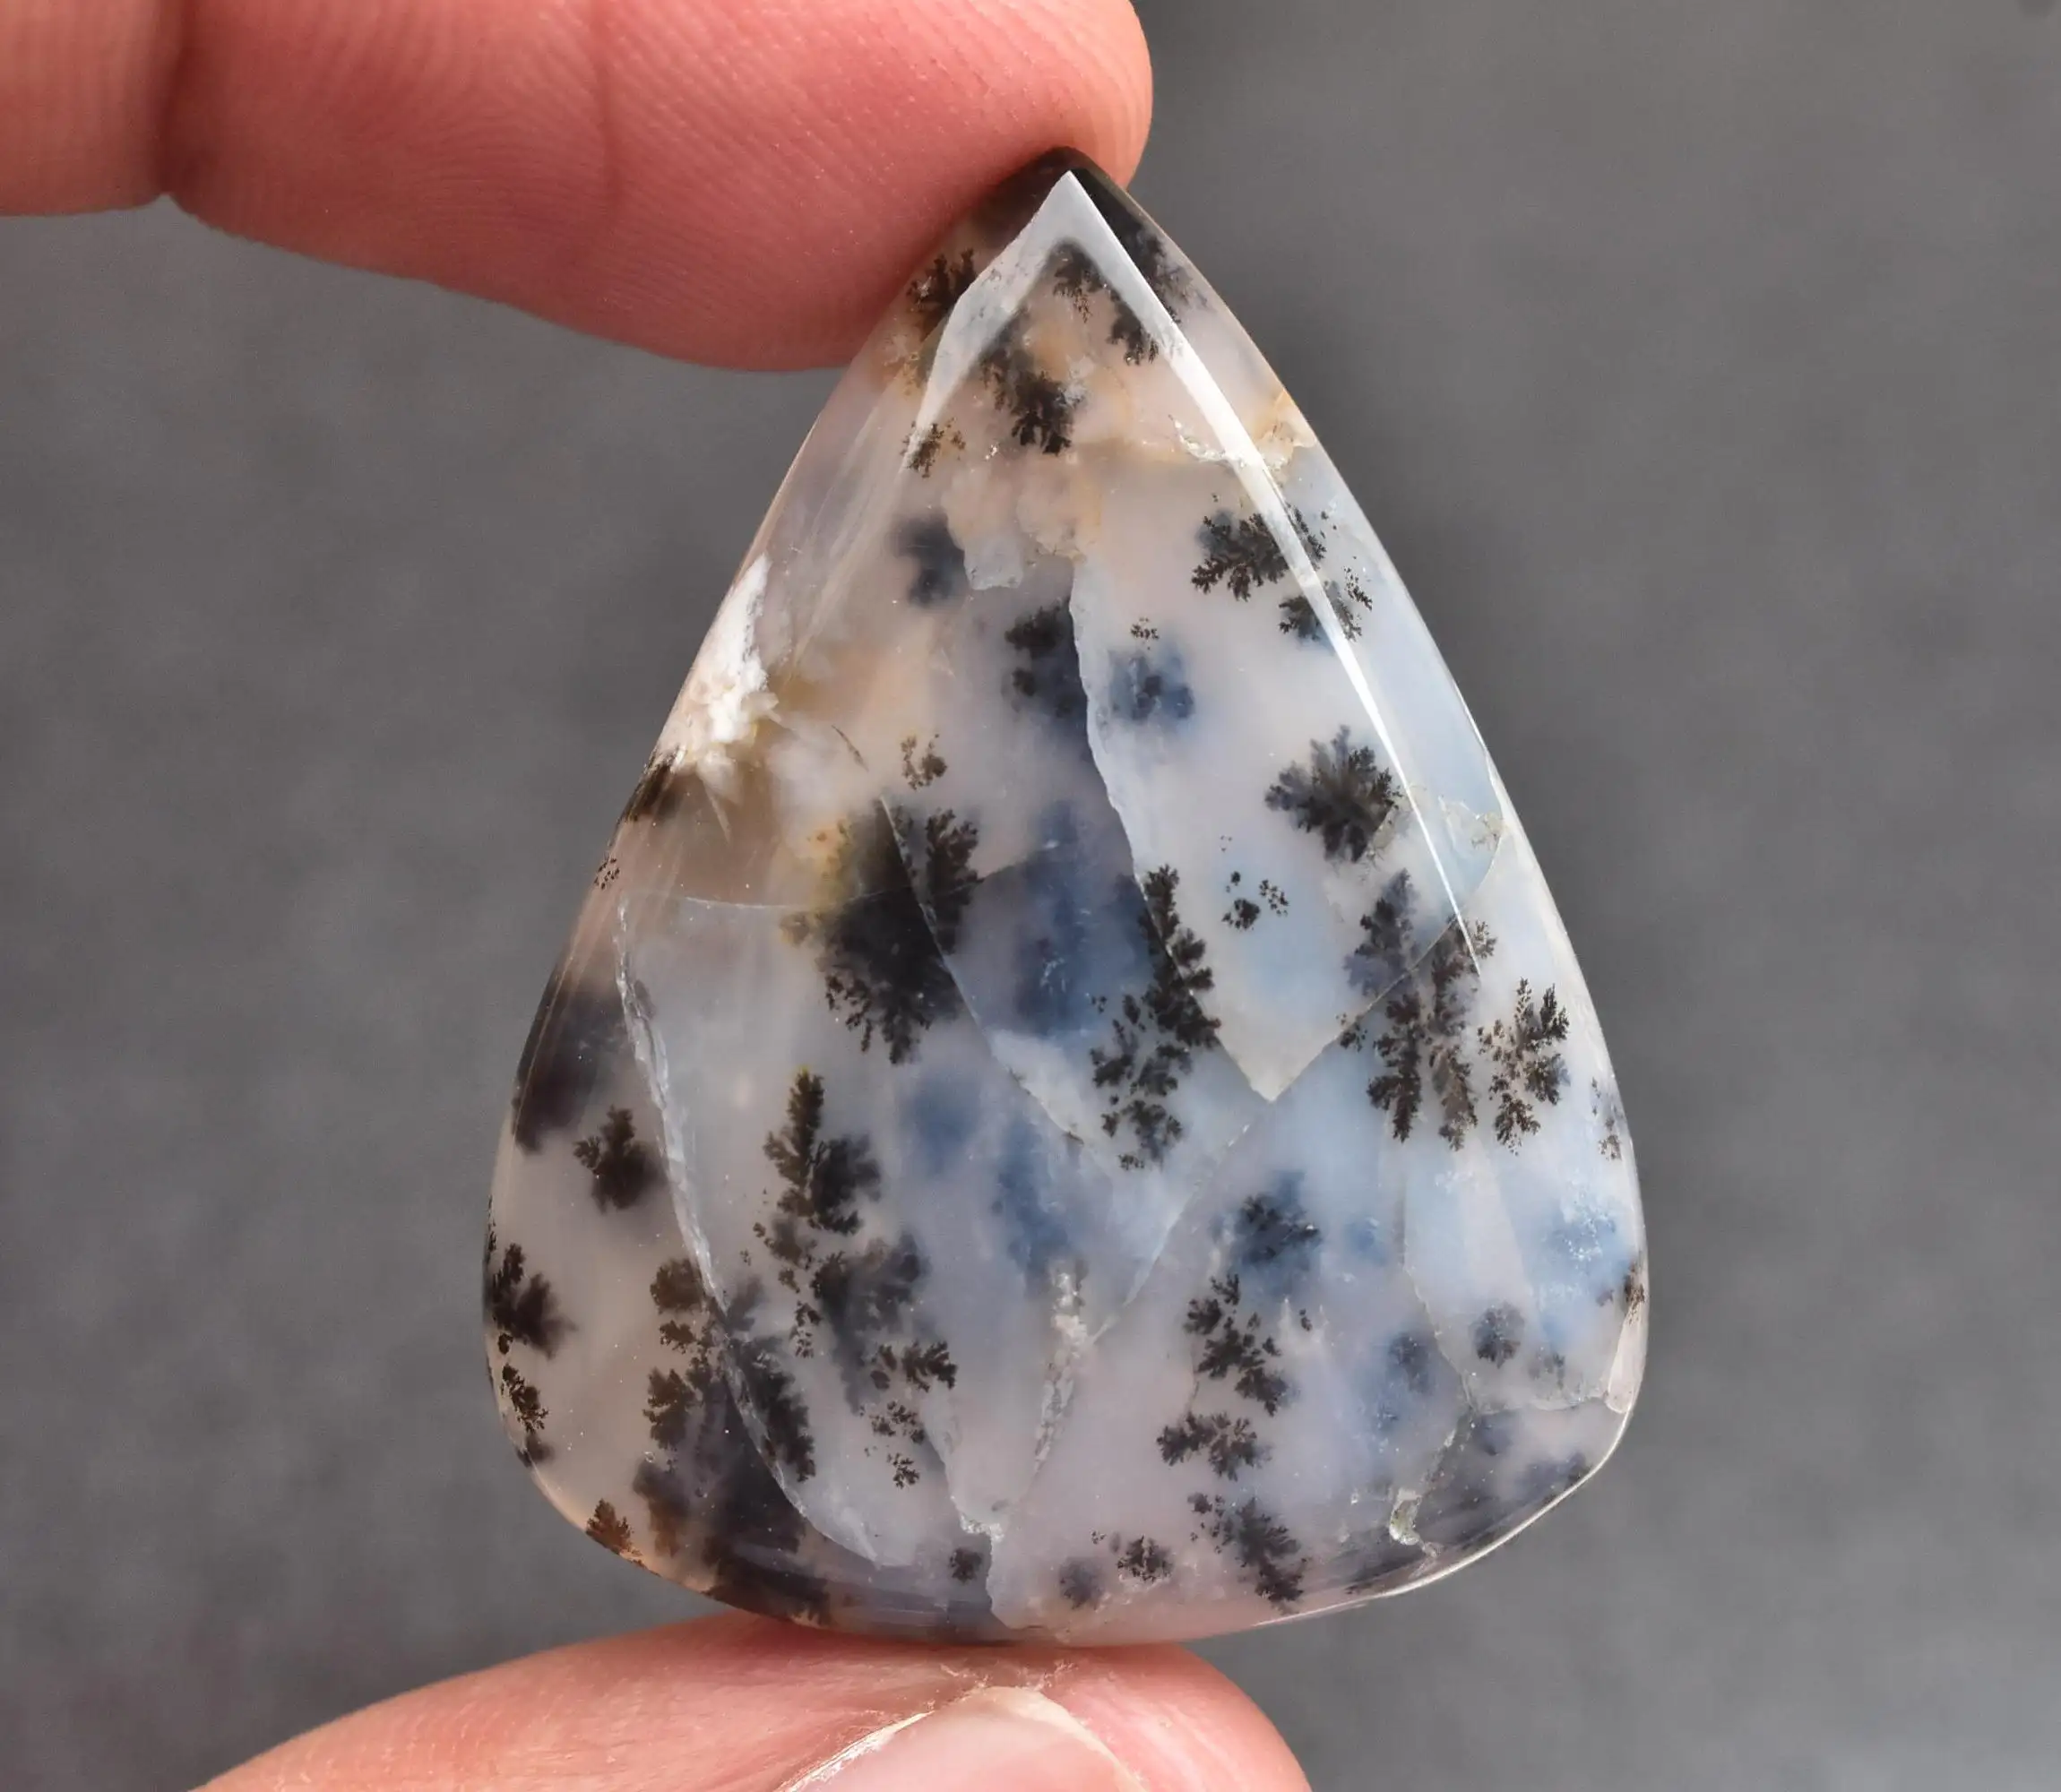 Türk dendritik Opal taş doğal çiçek Dendrite Opal takı için gevşek taş